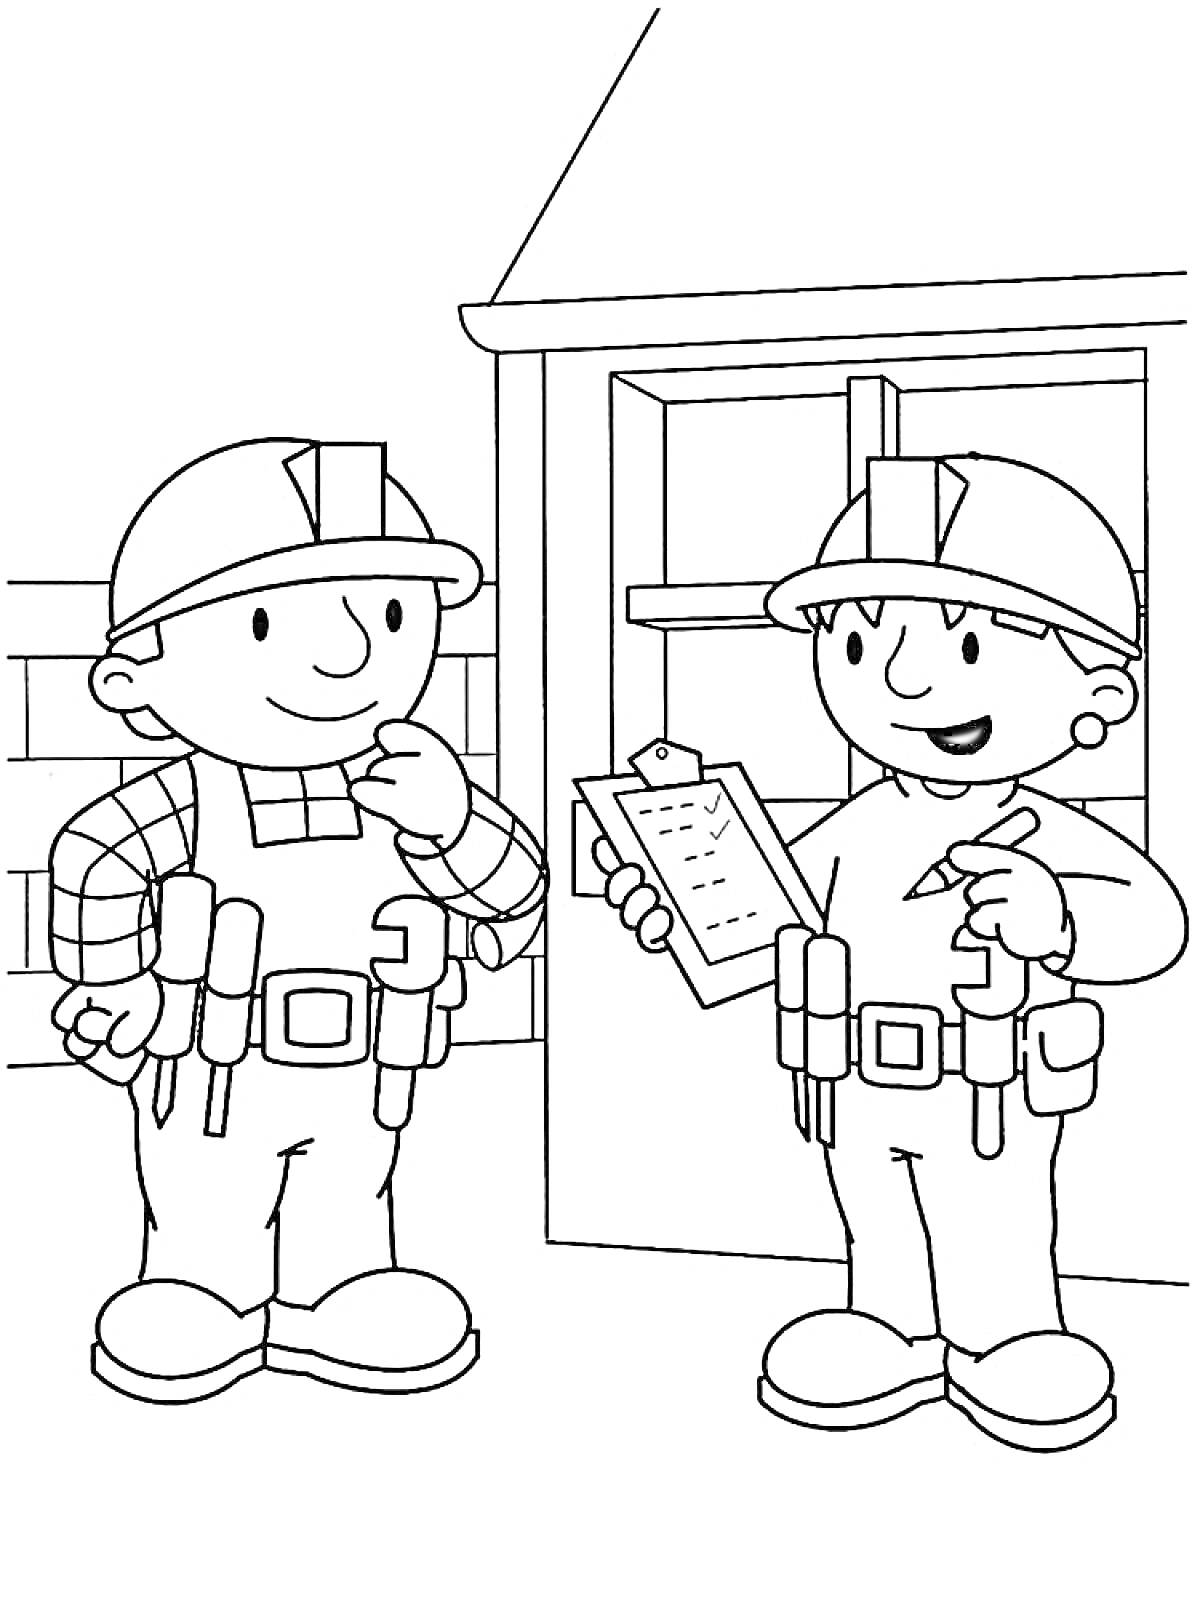 РаскраскаБоб-строитель и напарник проверяют список заданий у дома